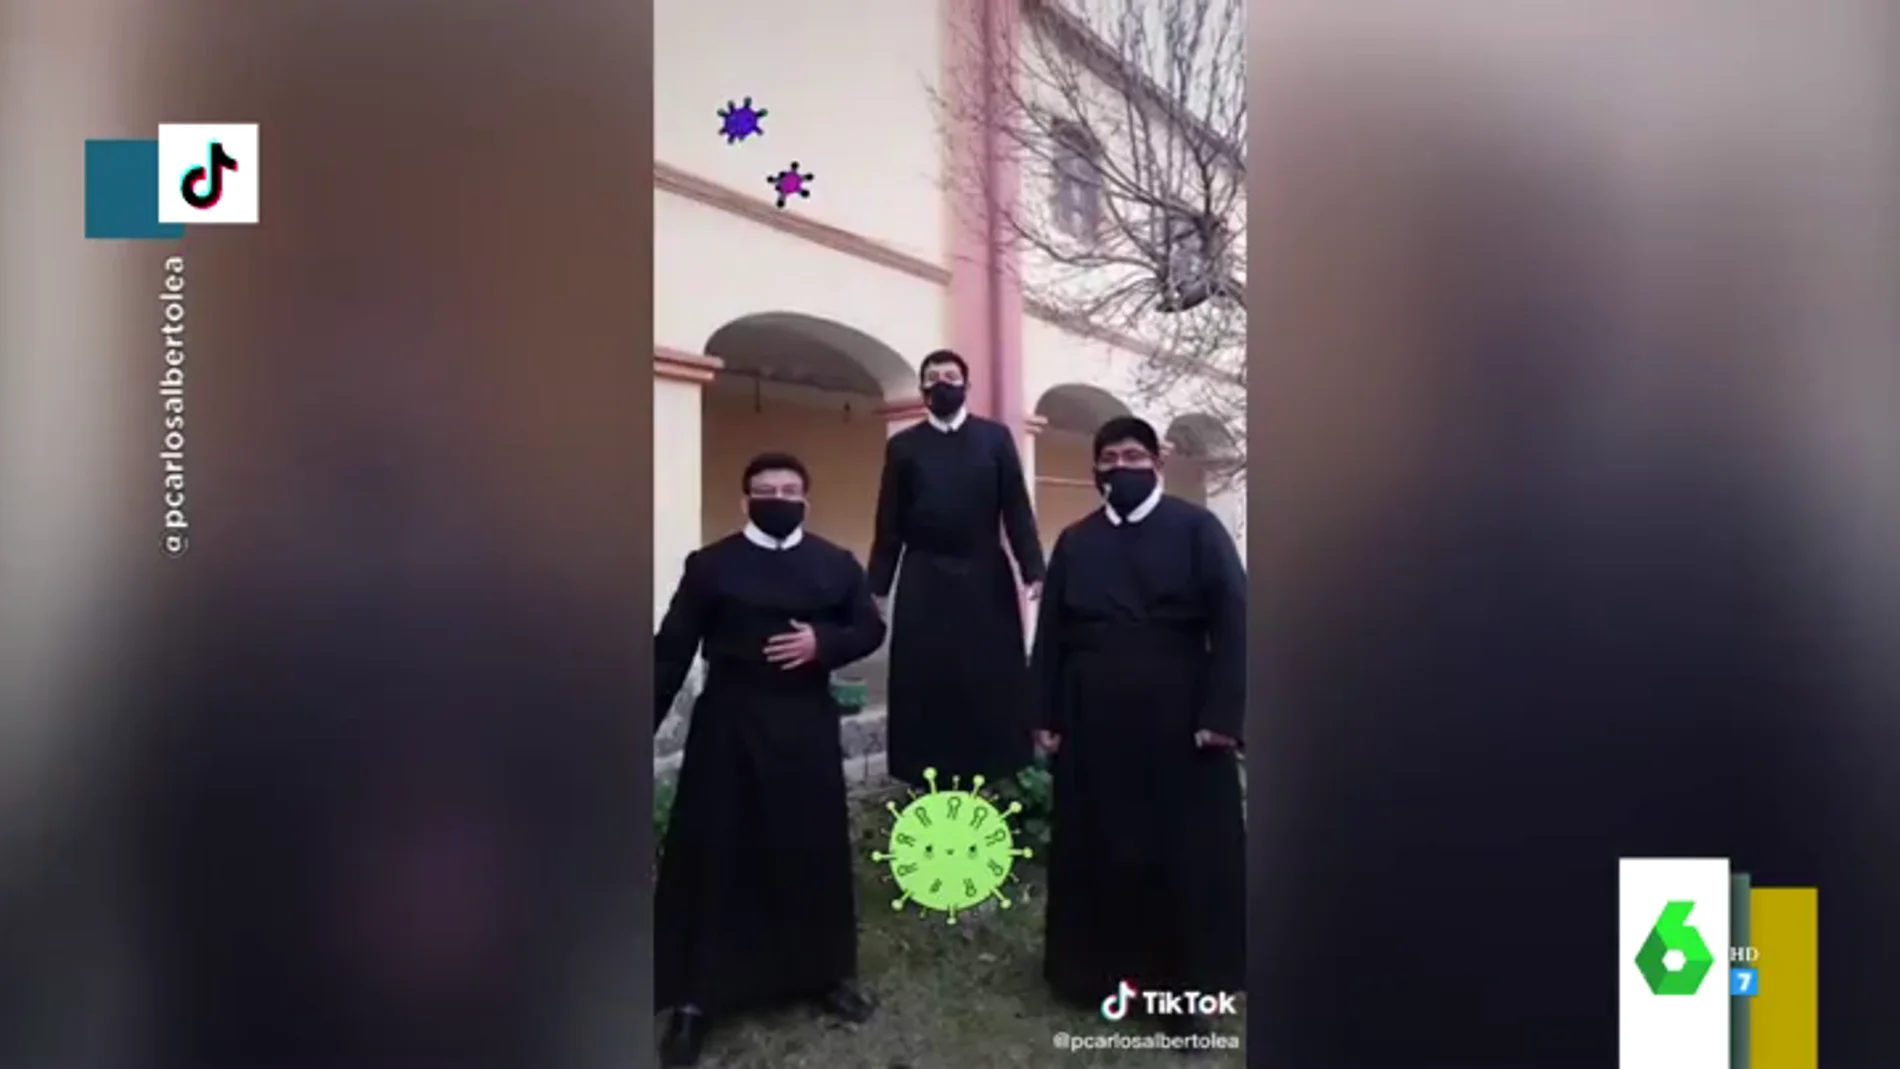 Un grupo de sacerdotes se hace viral en TikTok bailando al ritmo de 